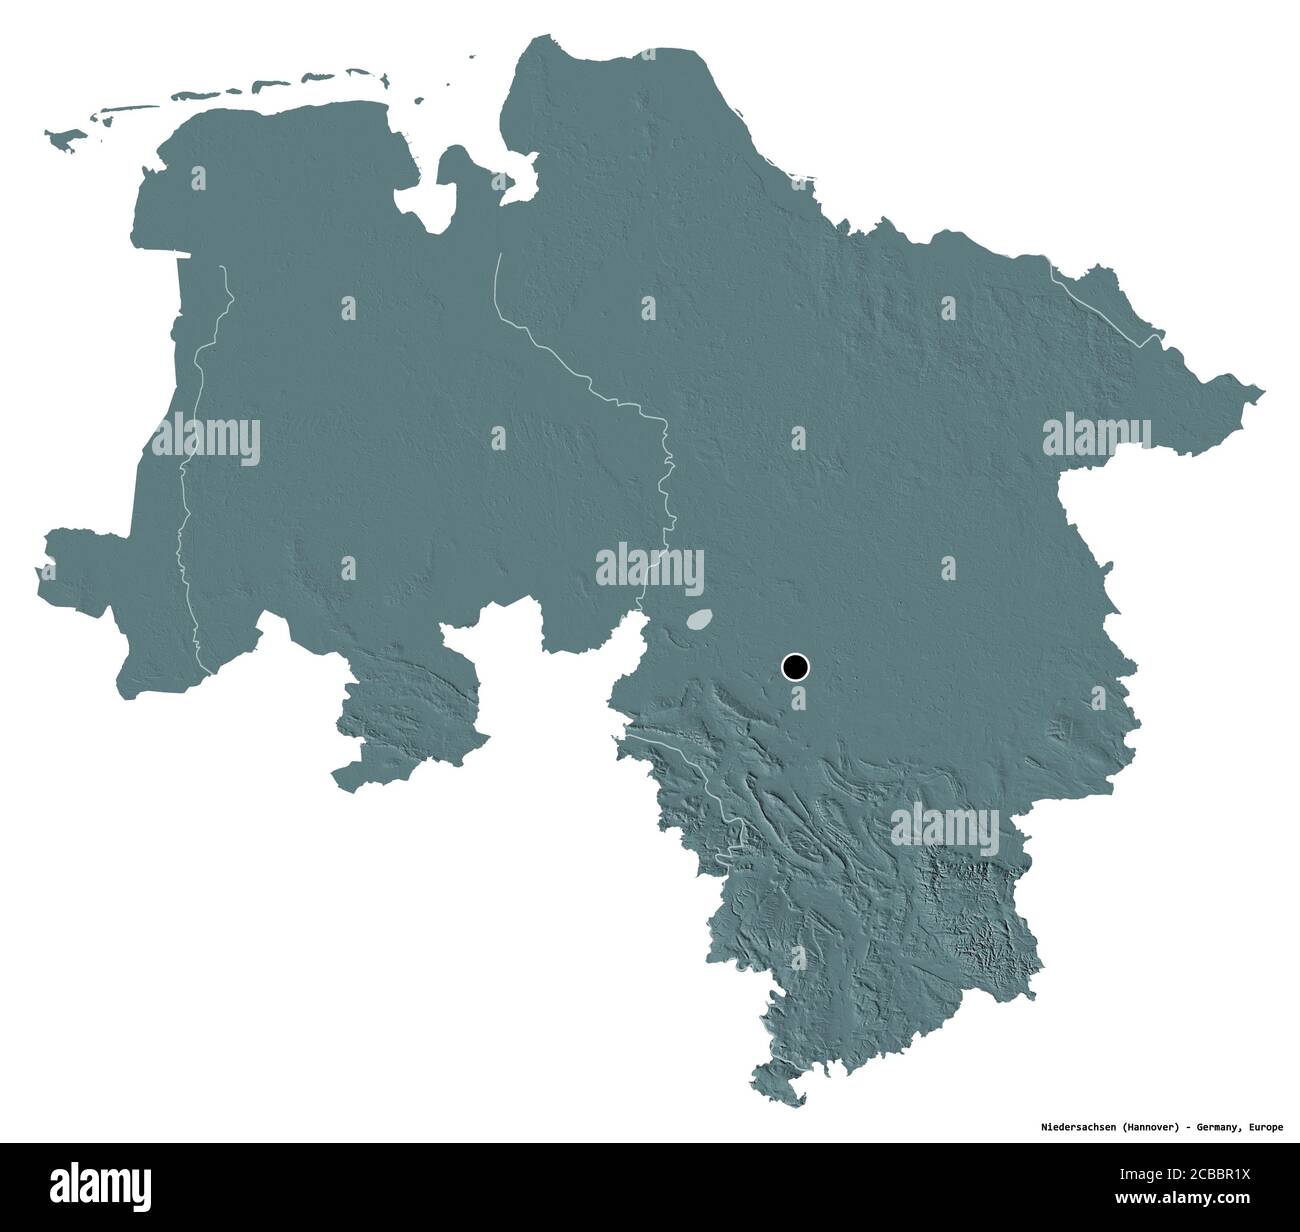 Forme de Niedersachsen, Etat d'Allemagne, avec sa capitale isolée sur fond blanc. Carte d'altitude en couleur. Rendu 3D Banque D'Images